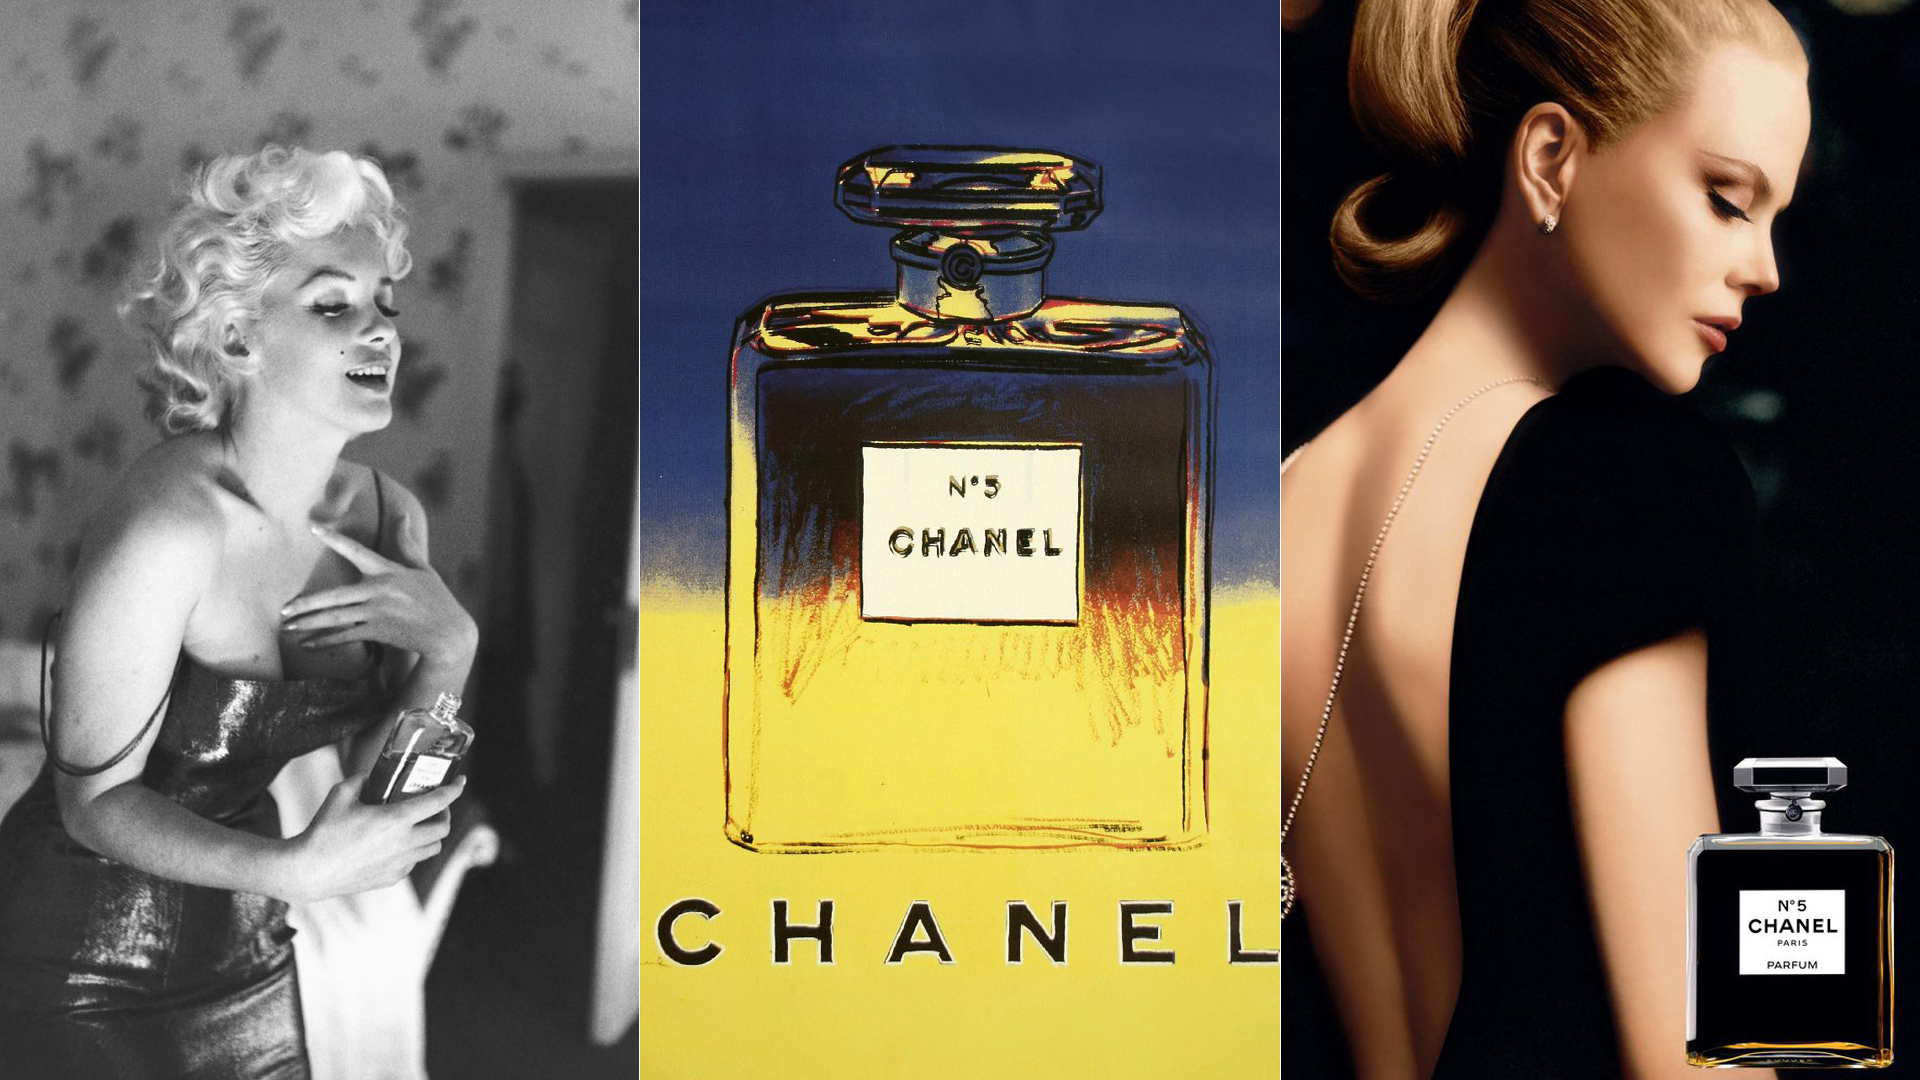 Cumple 100 años: El perfume Chanel Nº5 cumple 100 años